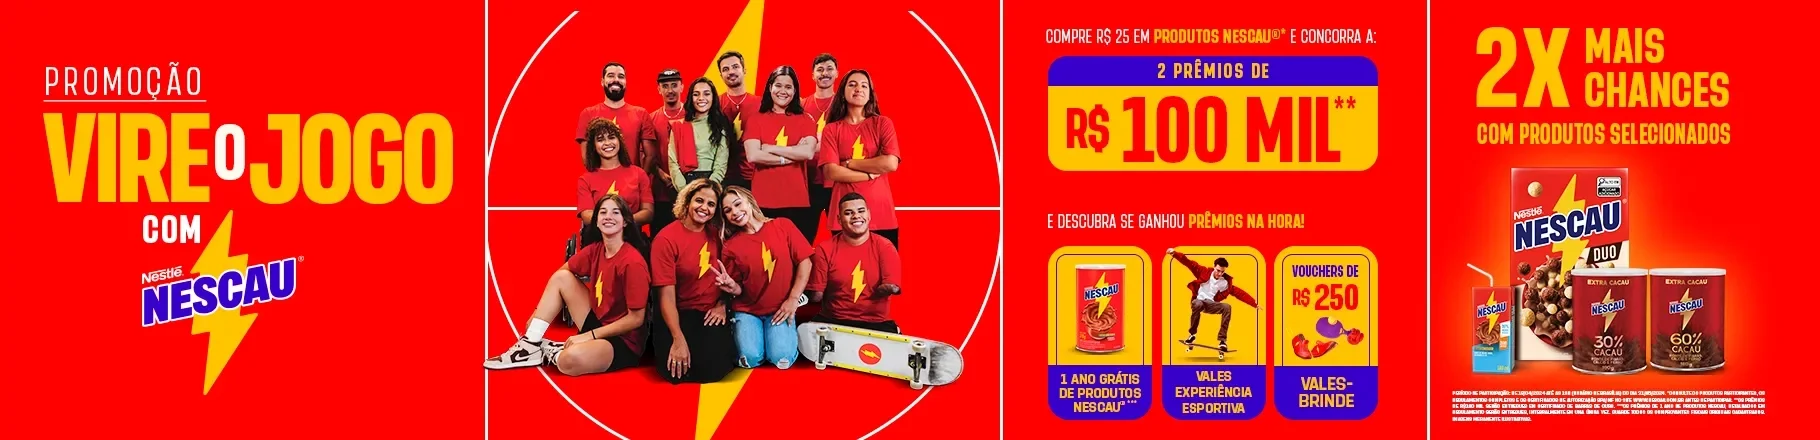 Promoção de Nescau com um fundo vermelho, foto dos embaixadores da marca e ao lado passo a passo para concorrer a prêmios